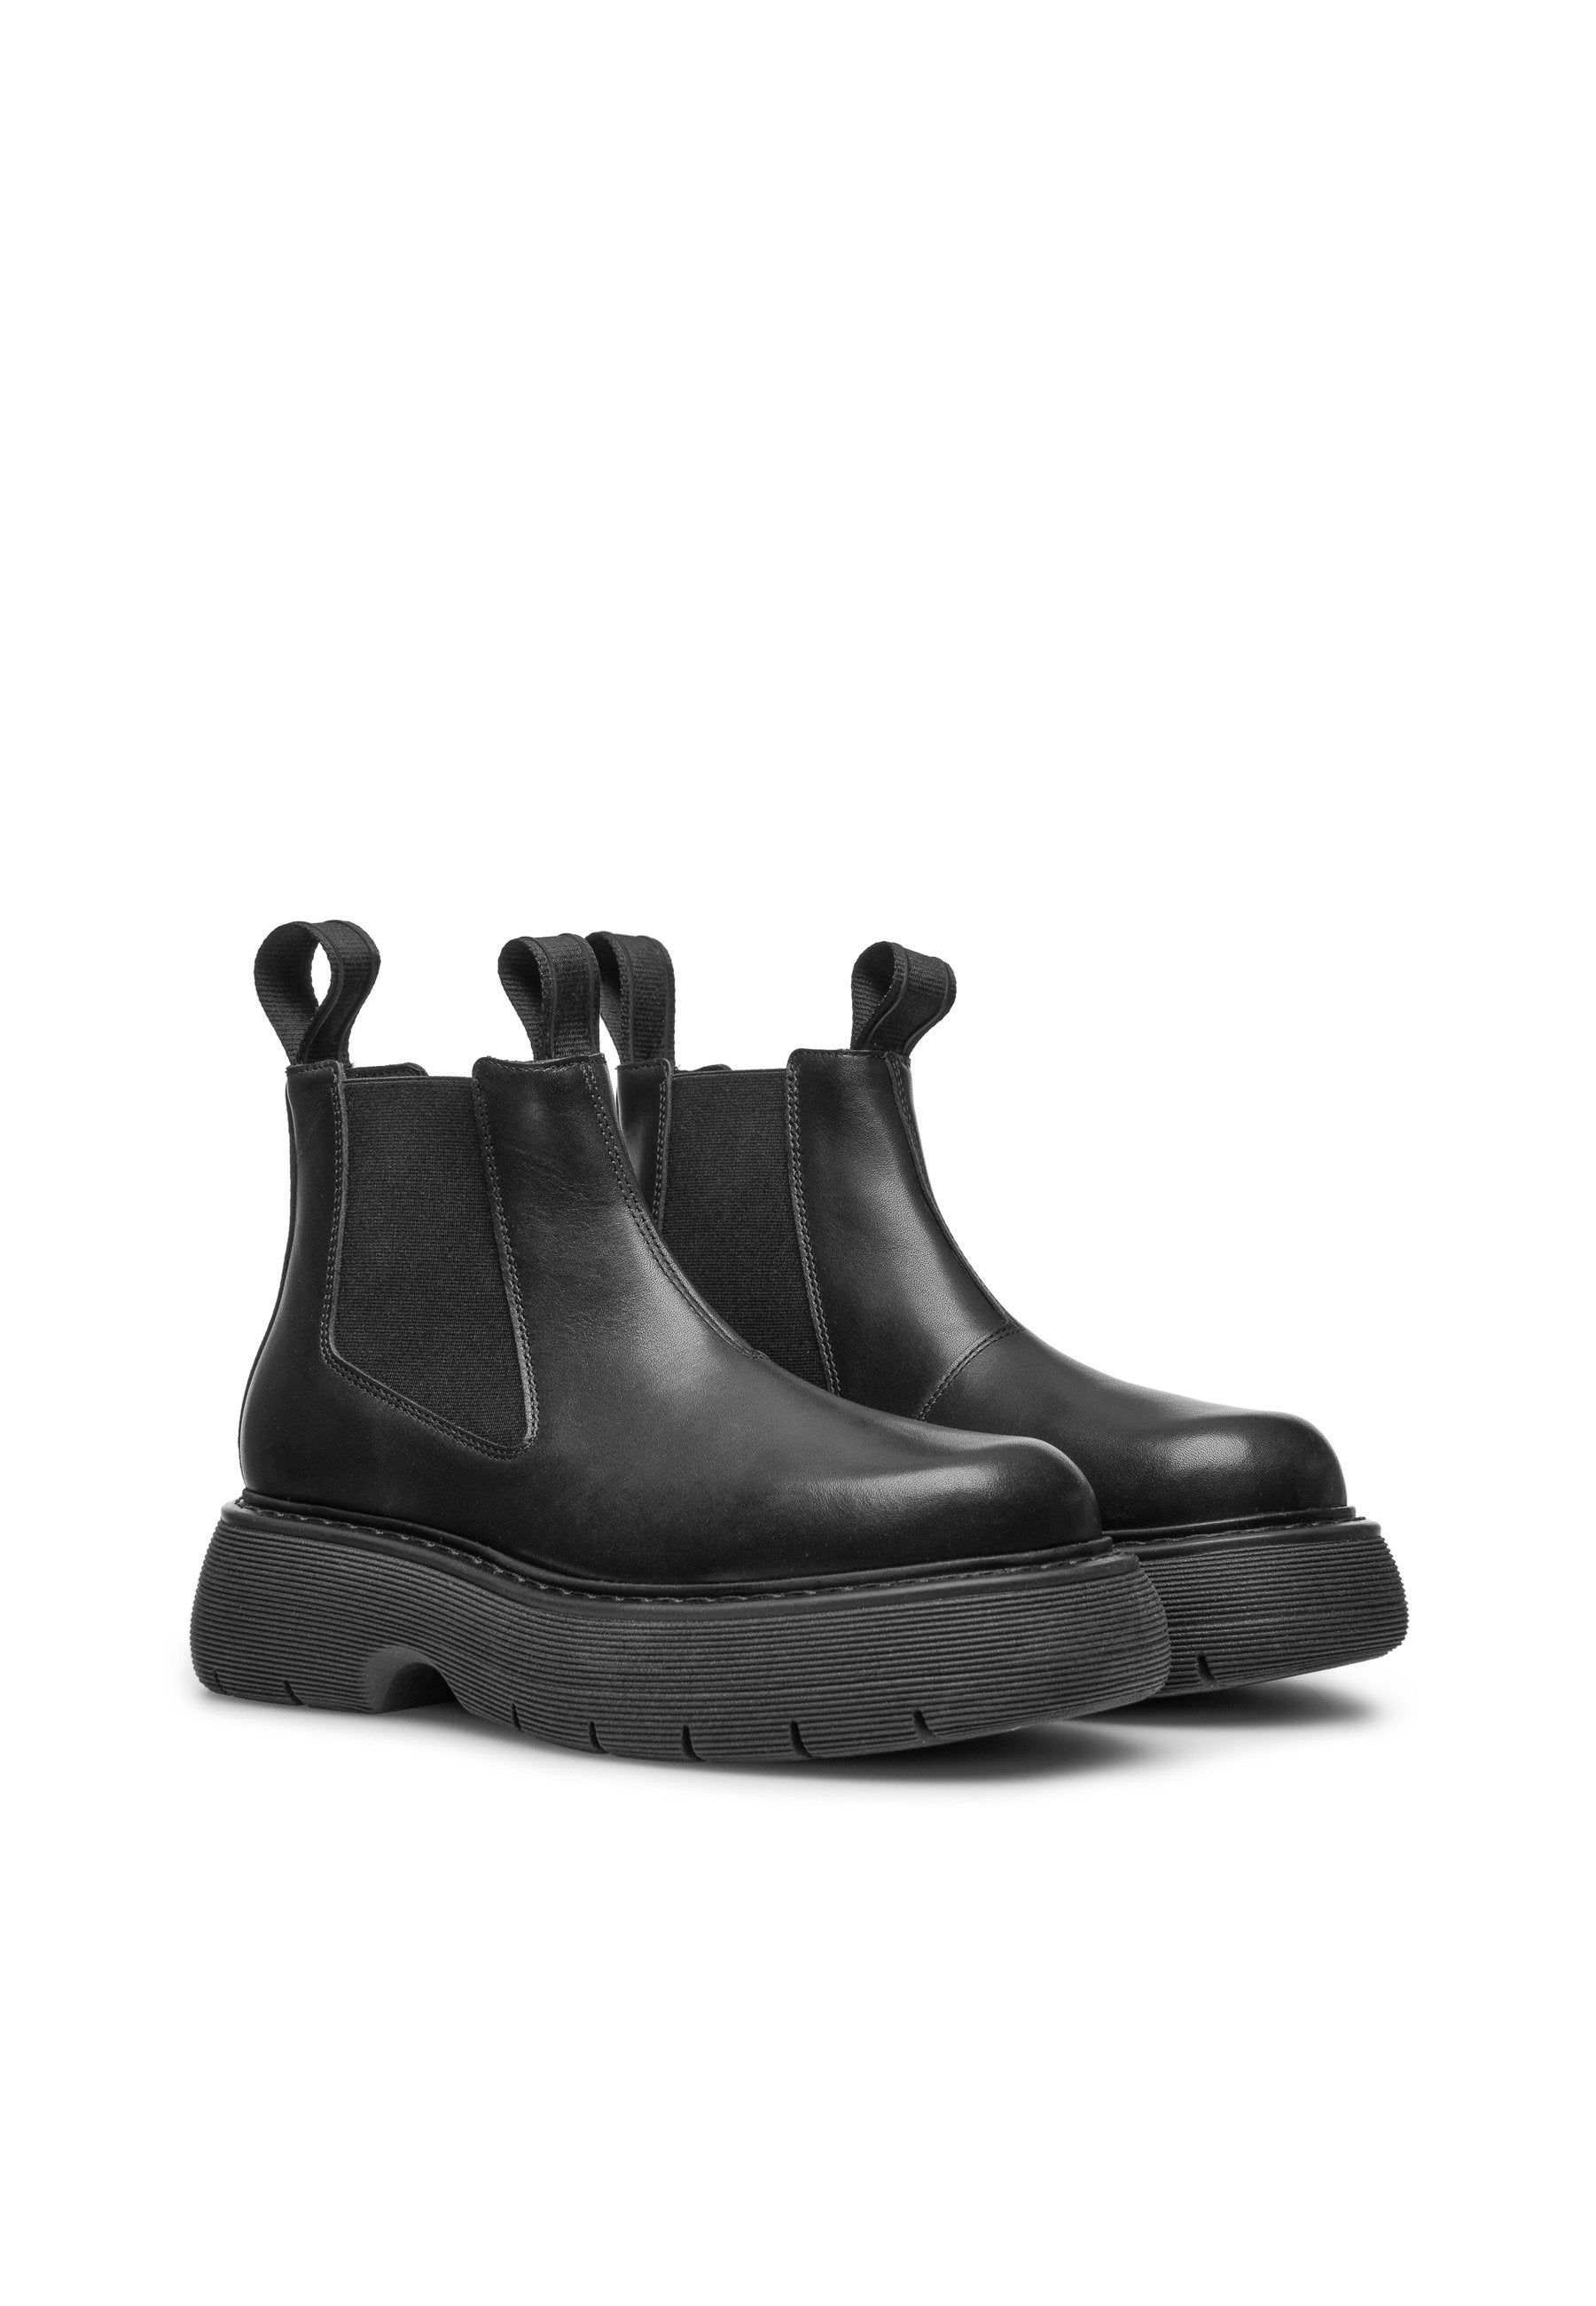 Ella Black Leather Chelsea Boots LAST1474 - 3